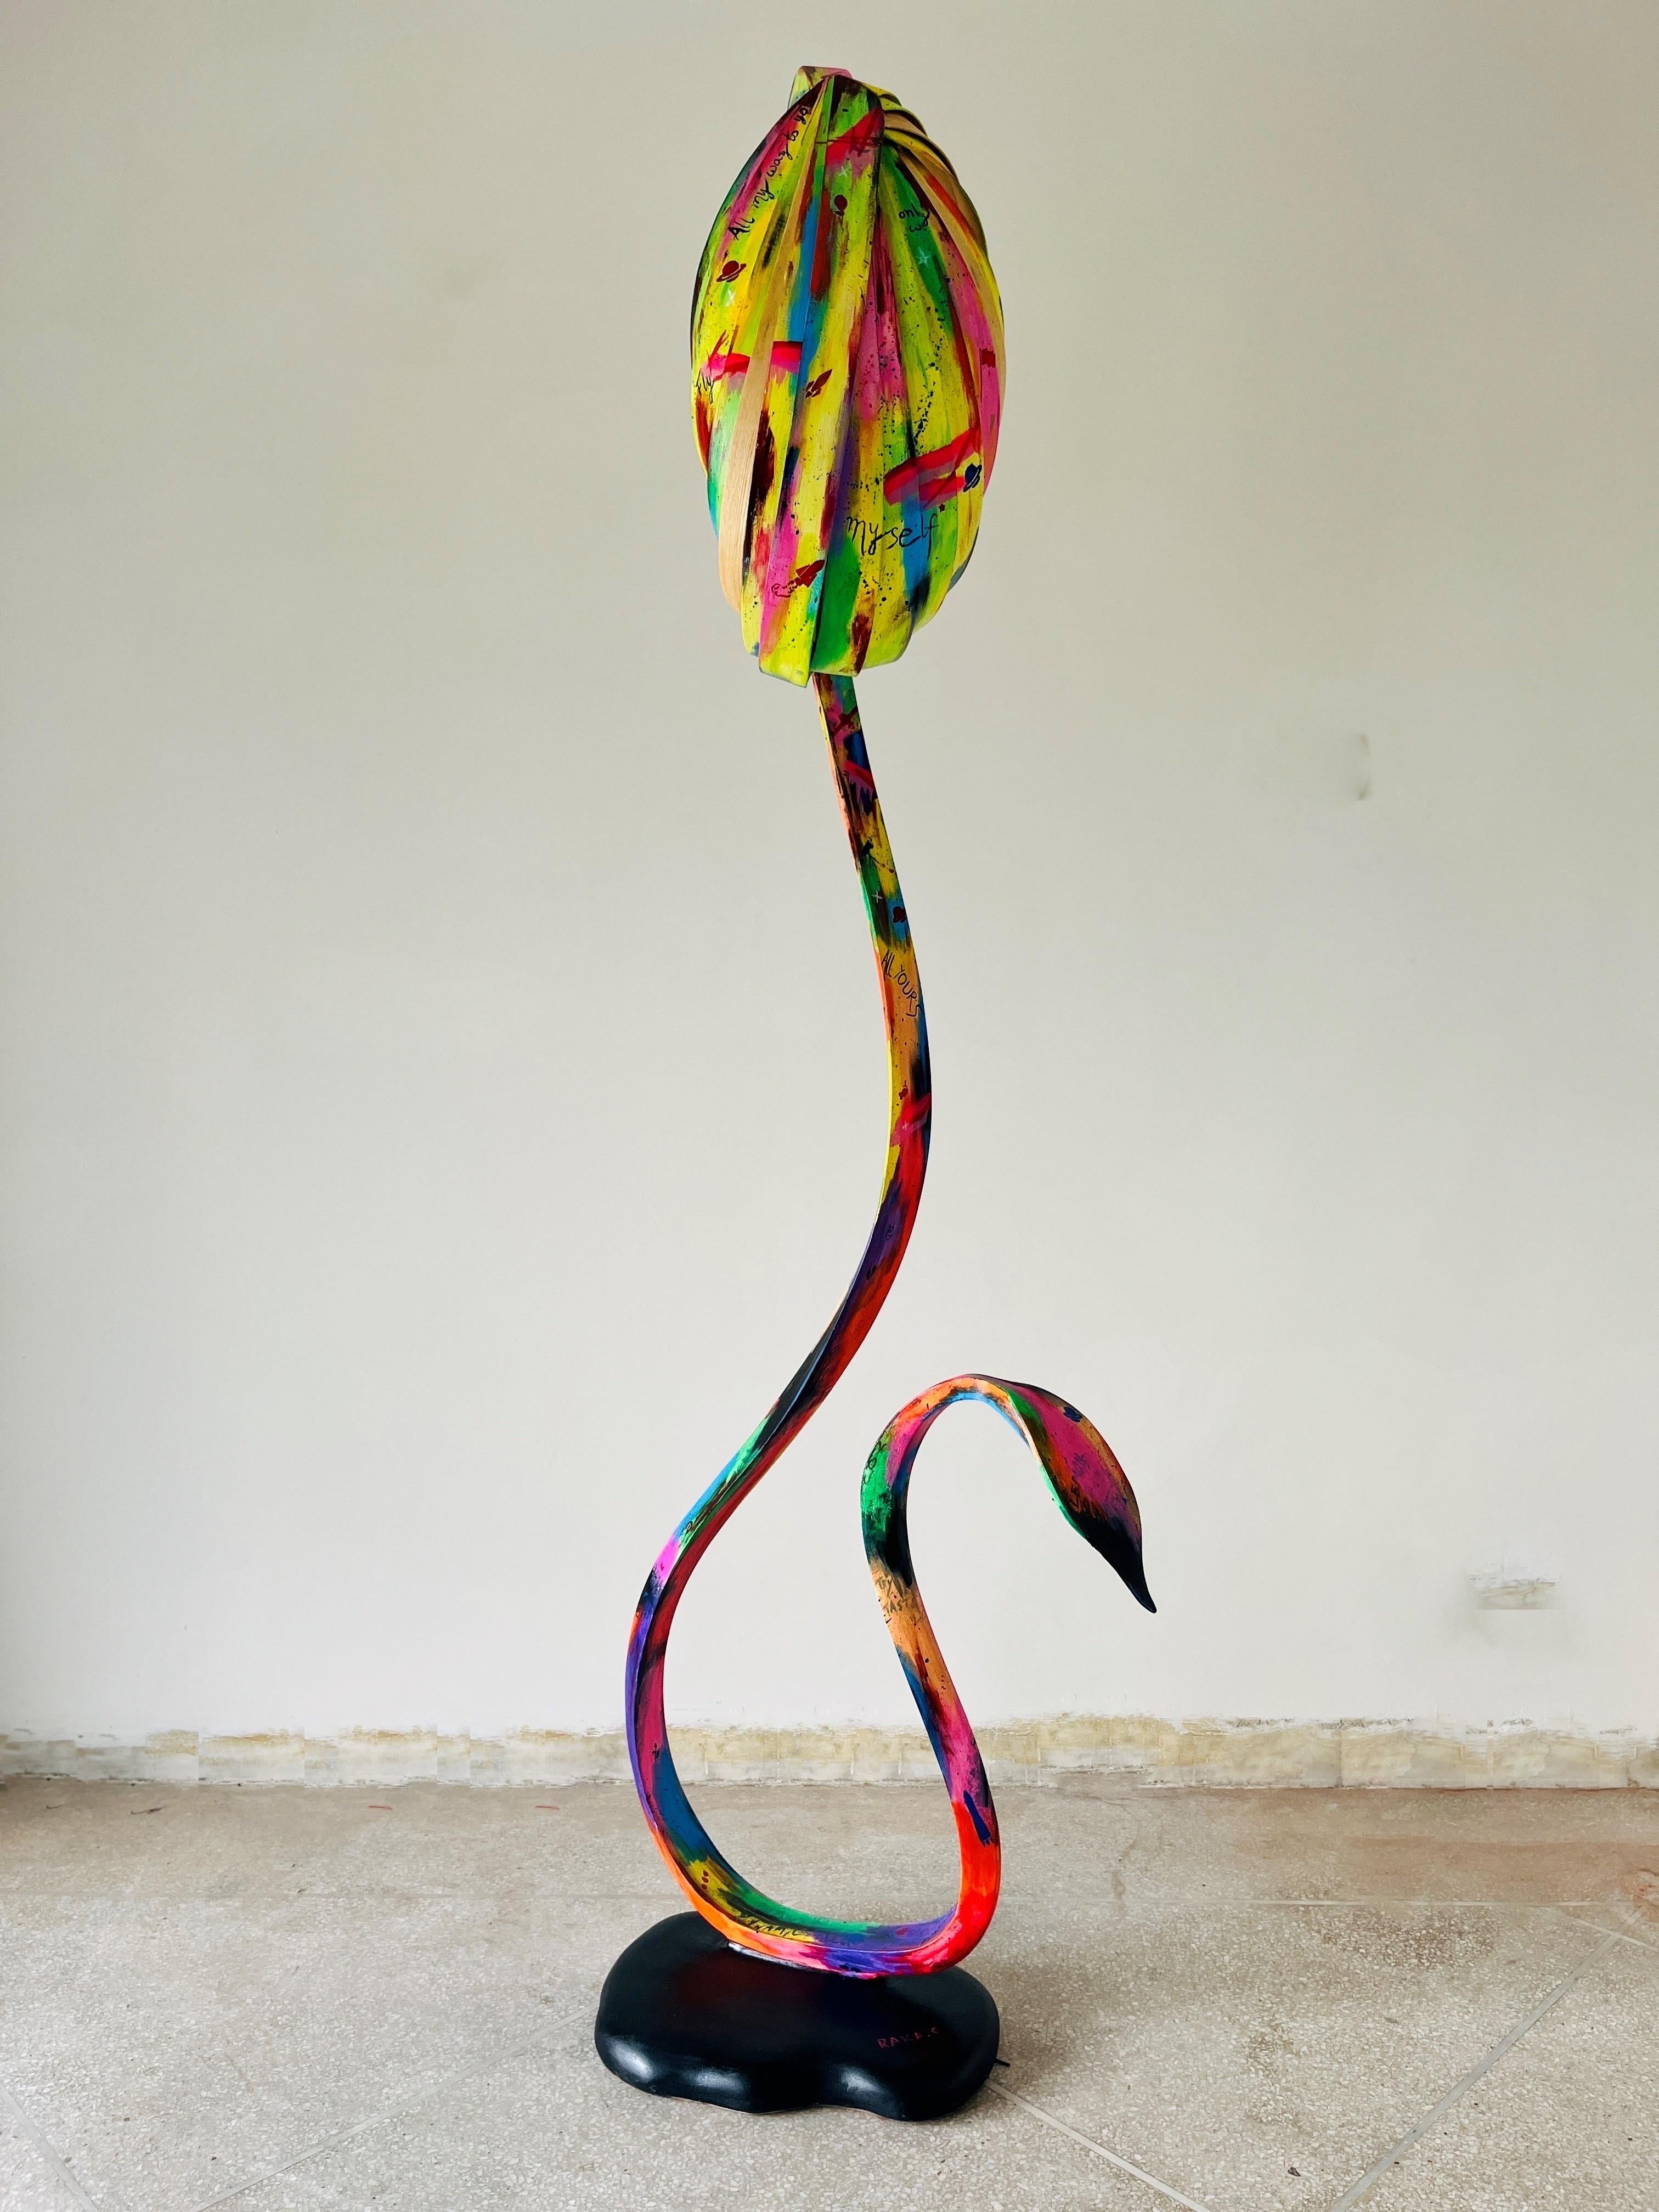 Il s'agit du lampadaire n° 2 de la série Fluentum. Une collaboration entre le Studio et Hamza Khan Sherwani, un artiste basé au Pakistan.

Il s'agit d'une lampe à arc présentée comme une abstraction d'une plante grimpante. De fines lamelles de bois